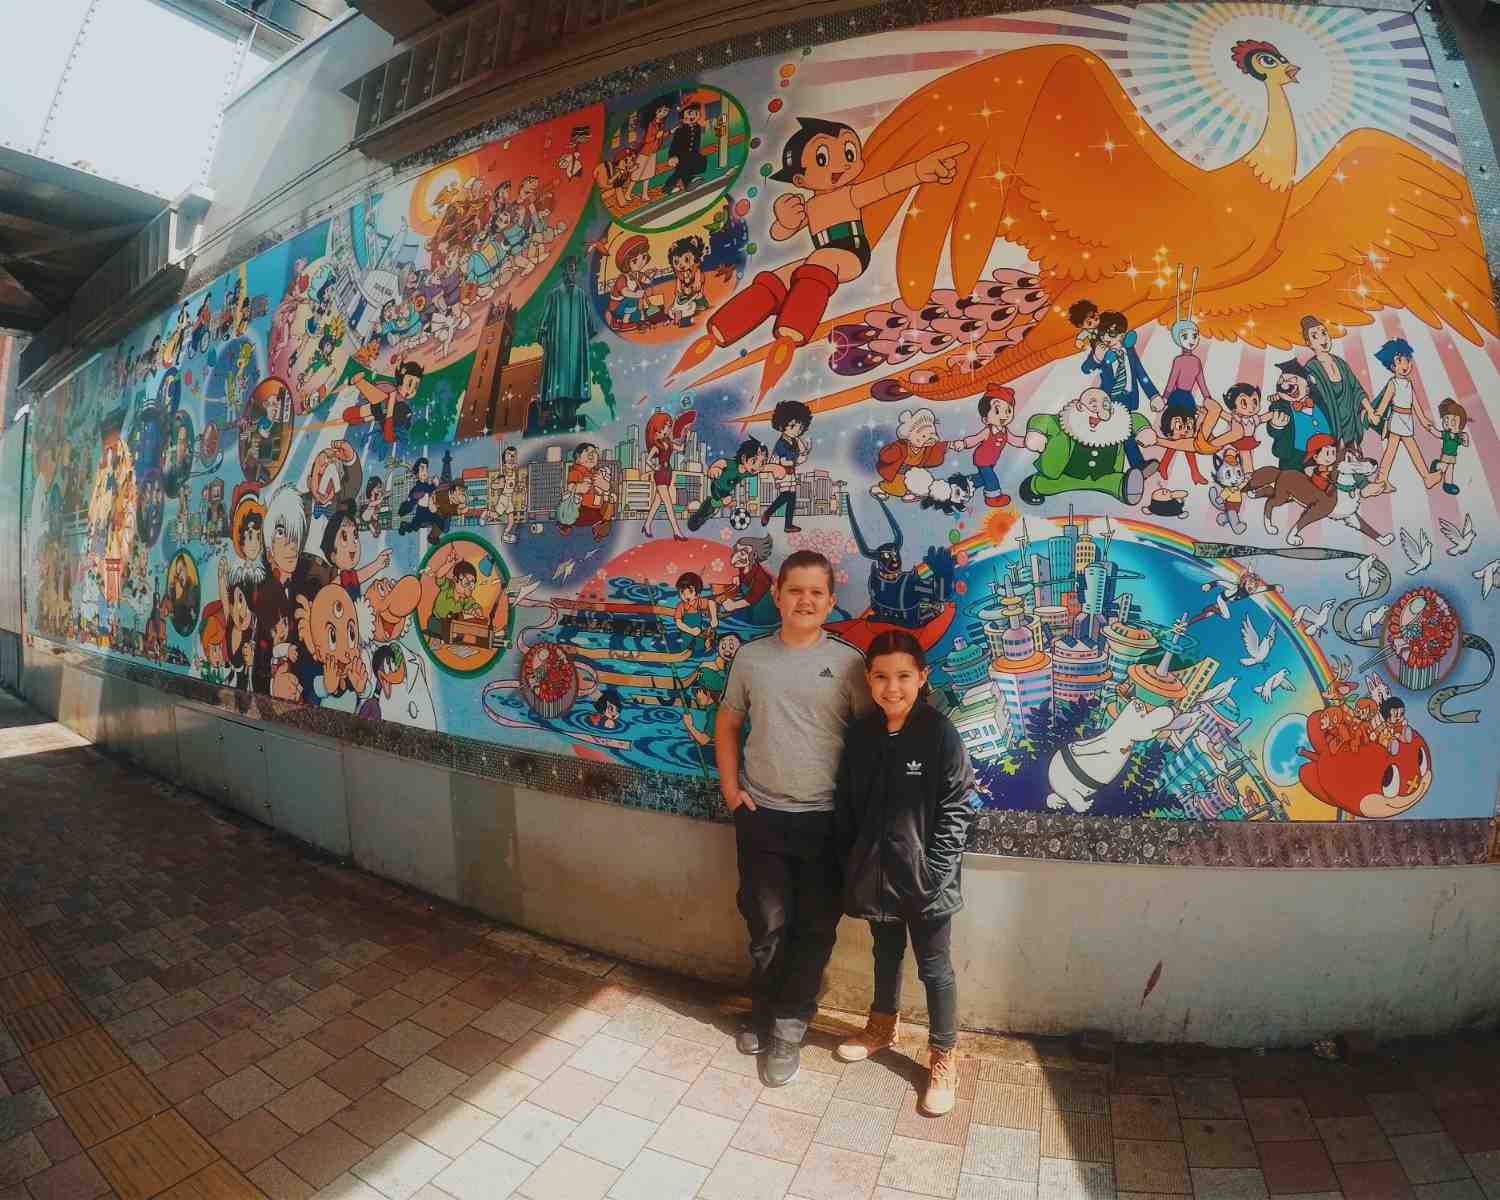 Astroboy mural in Japan